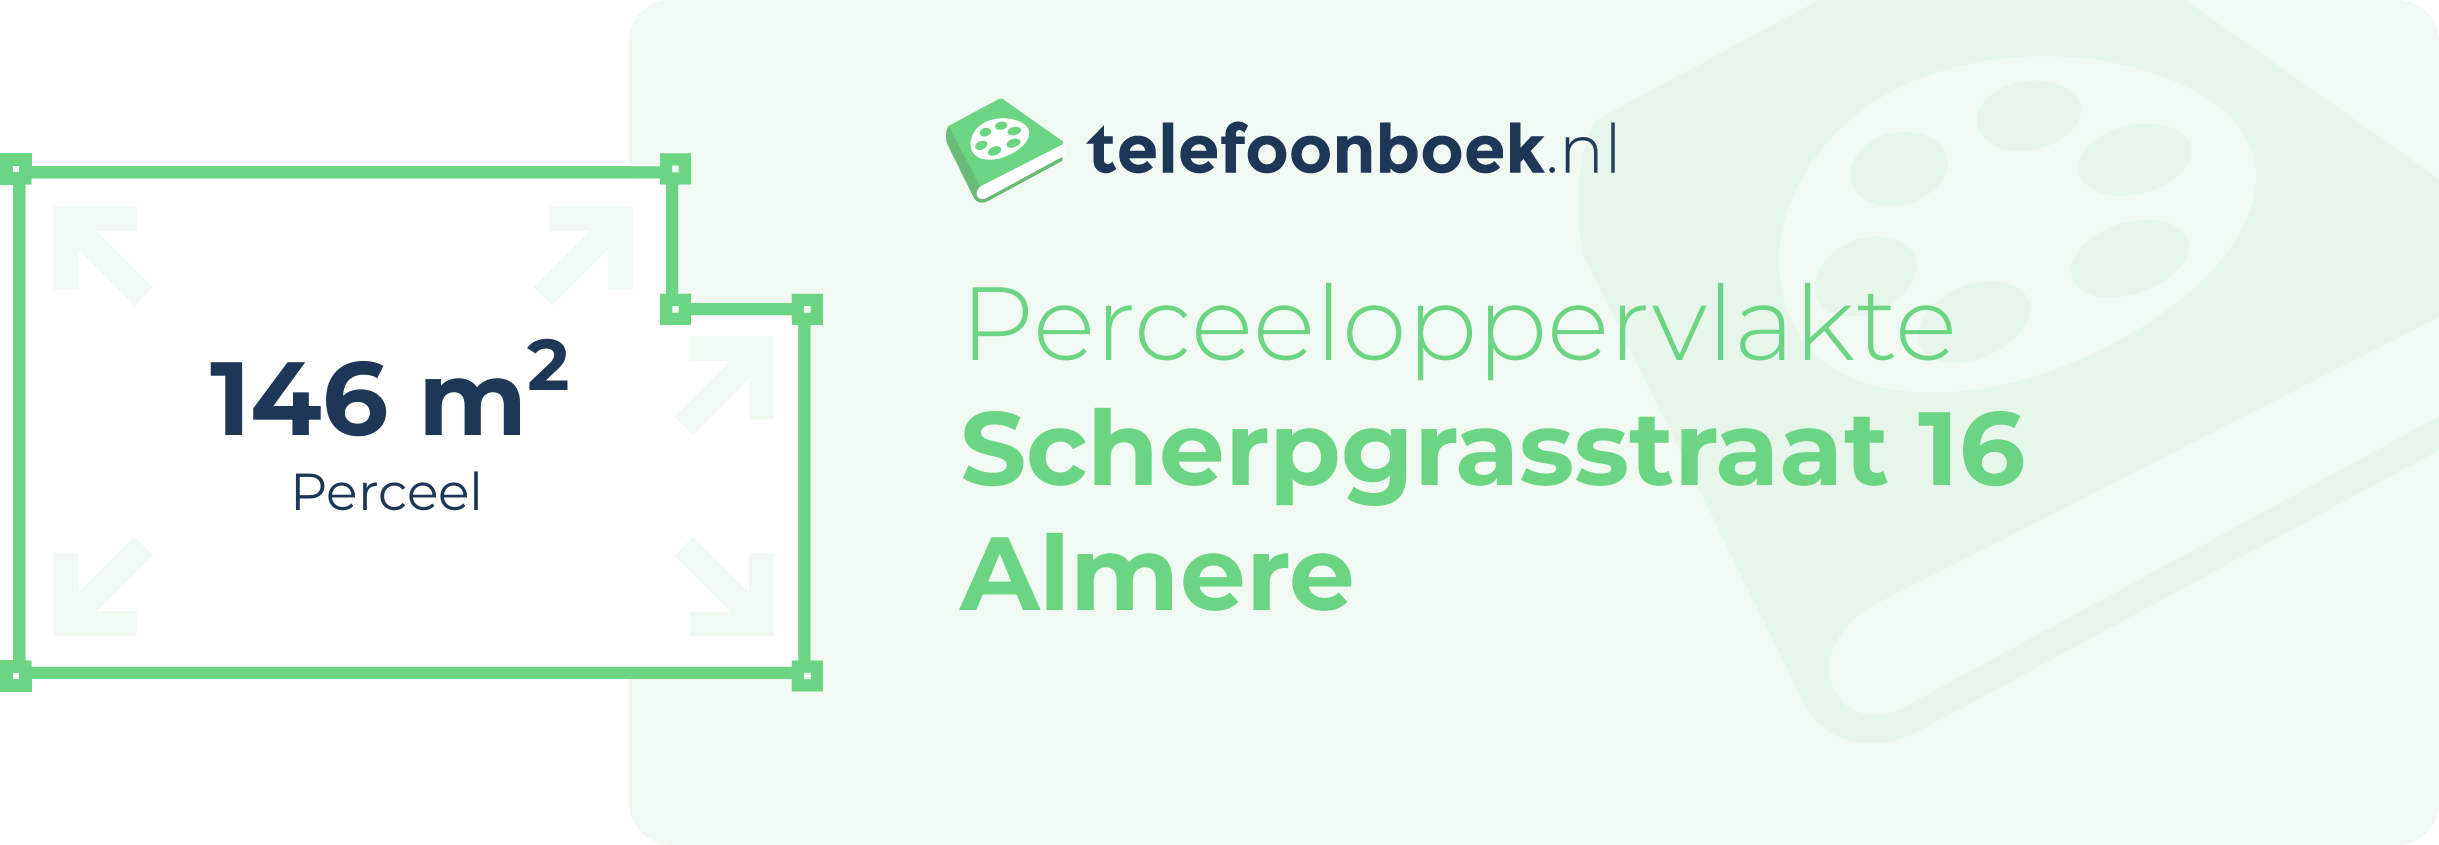 Perceeloppervlakte Scherpgrasstraat 16 Almere